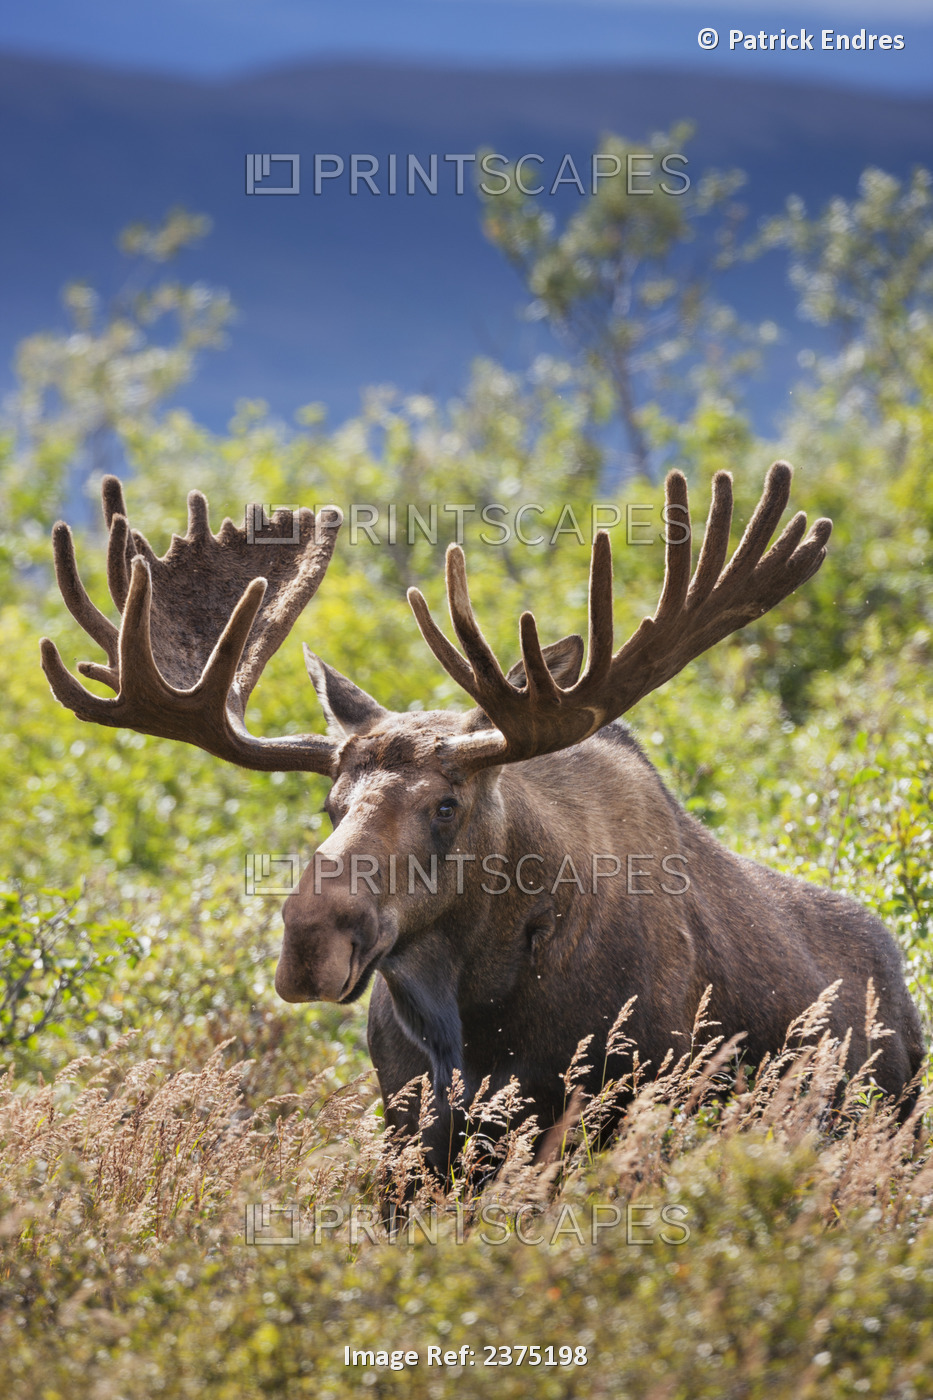 Large Bull Moose In Velvet Antlers Feeds On The Summer Tundra Vegetation Of ...